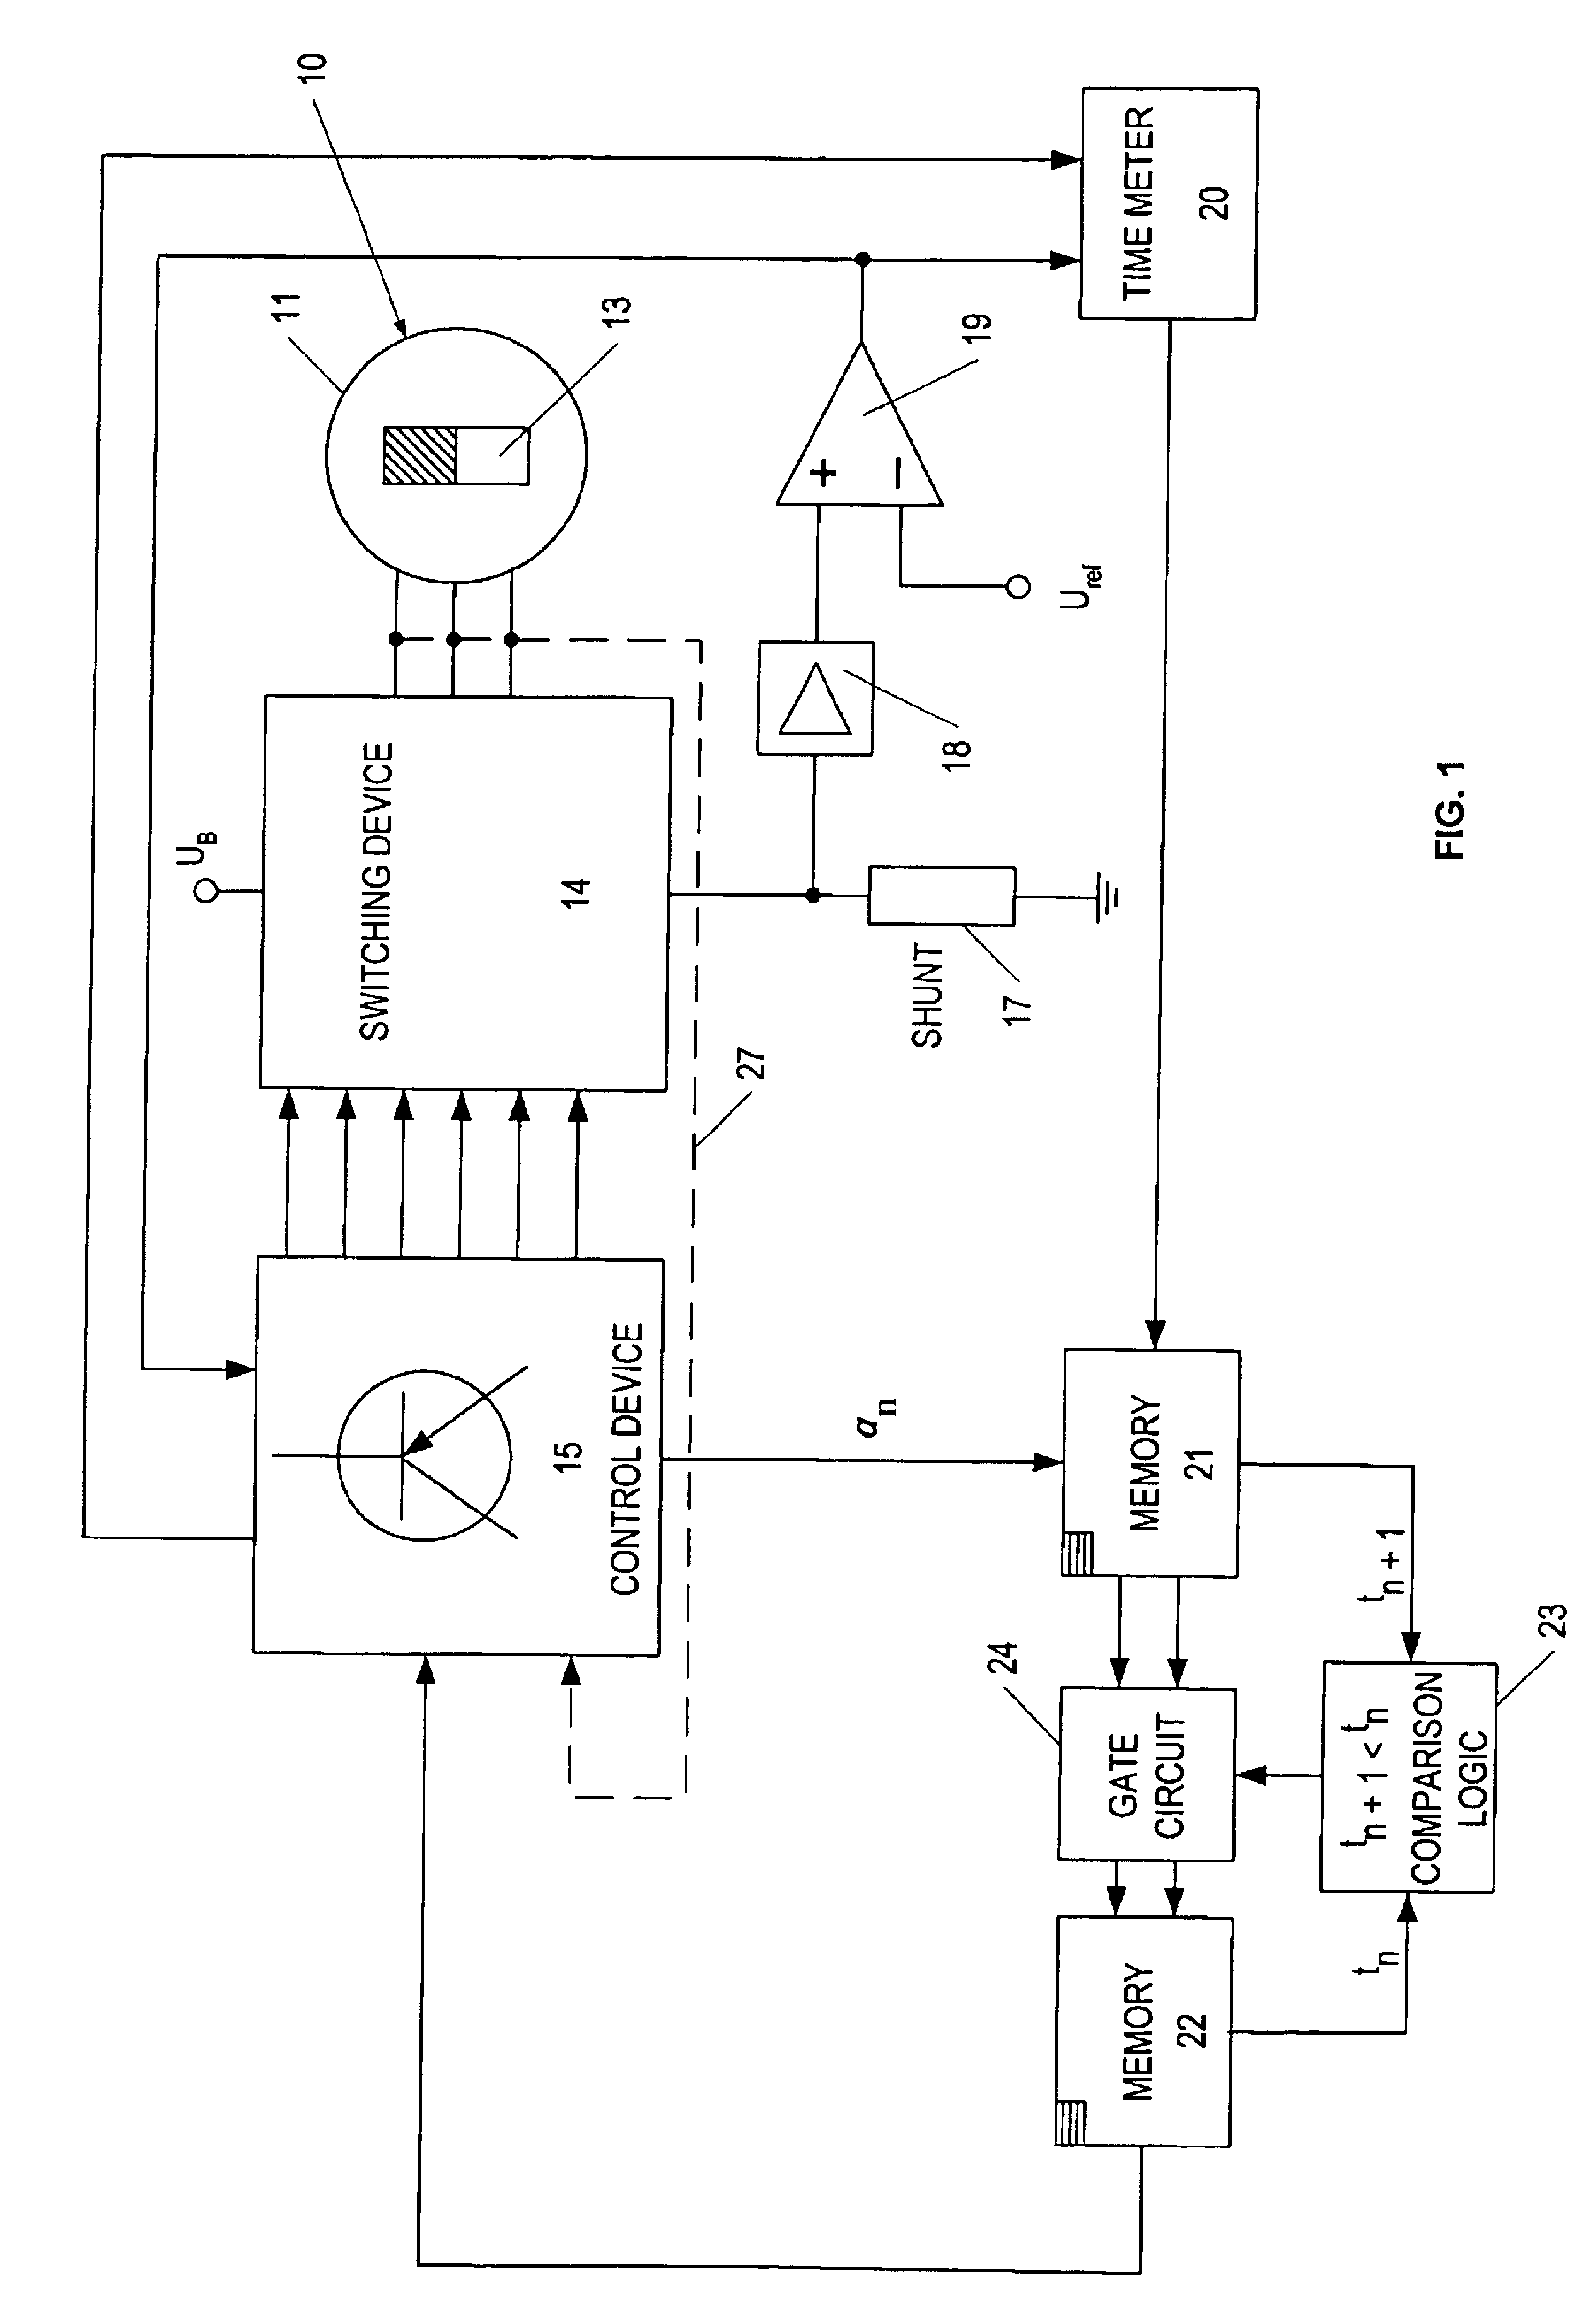 Method for starting a brushless d.c. motor